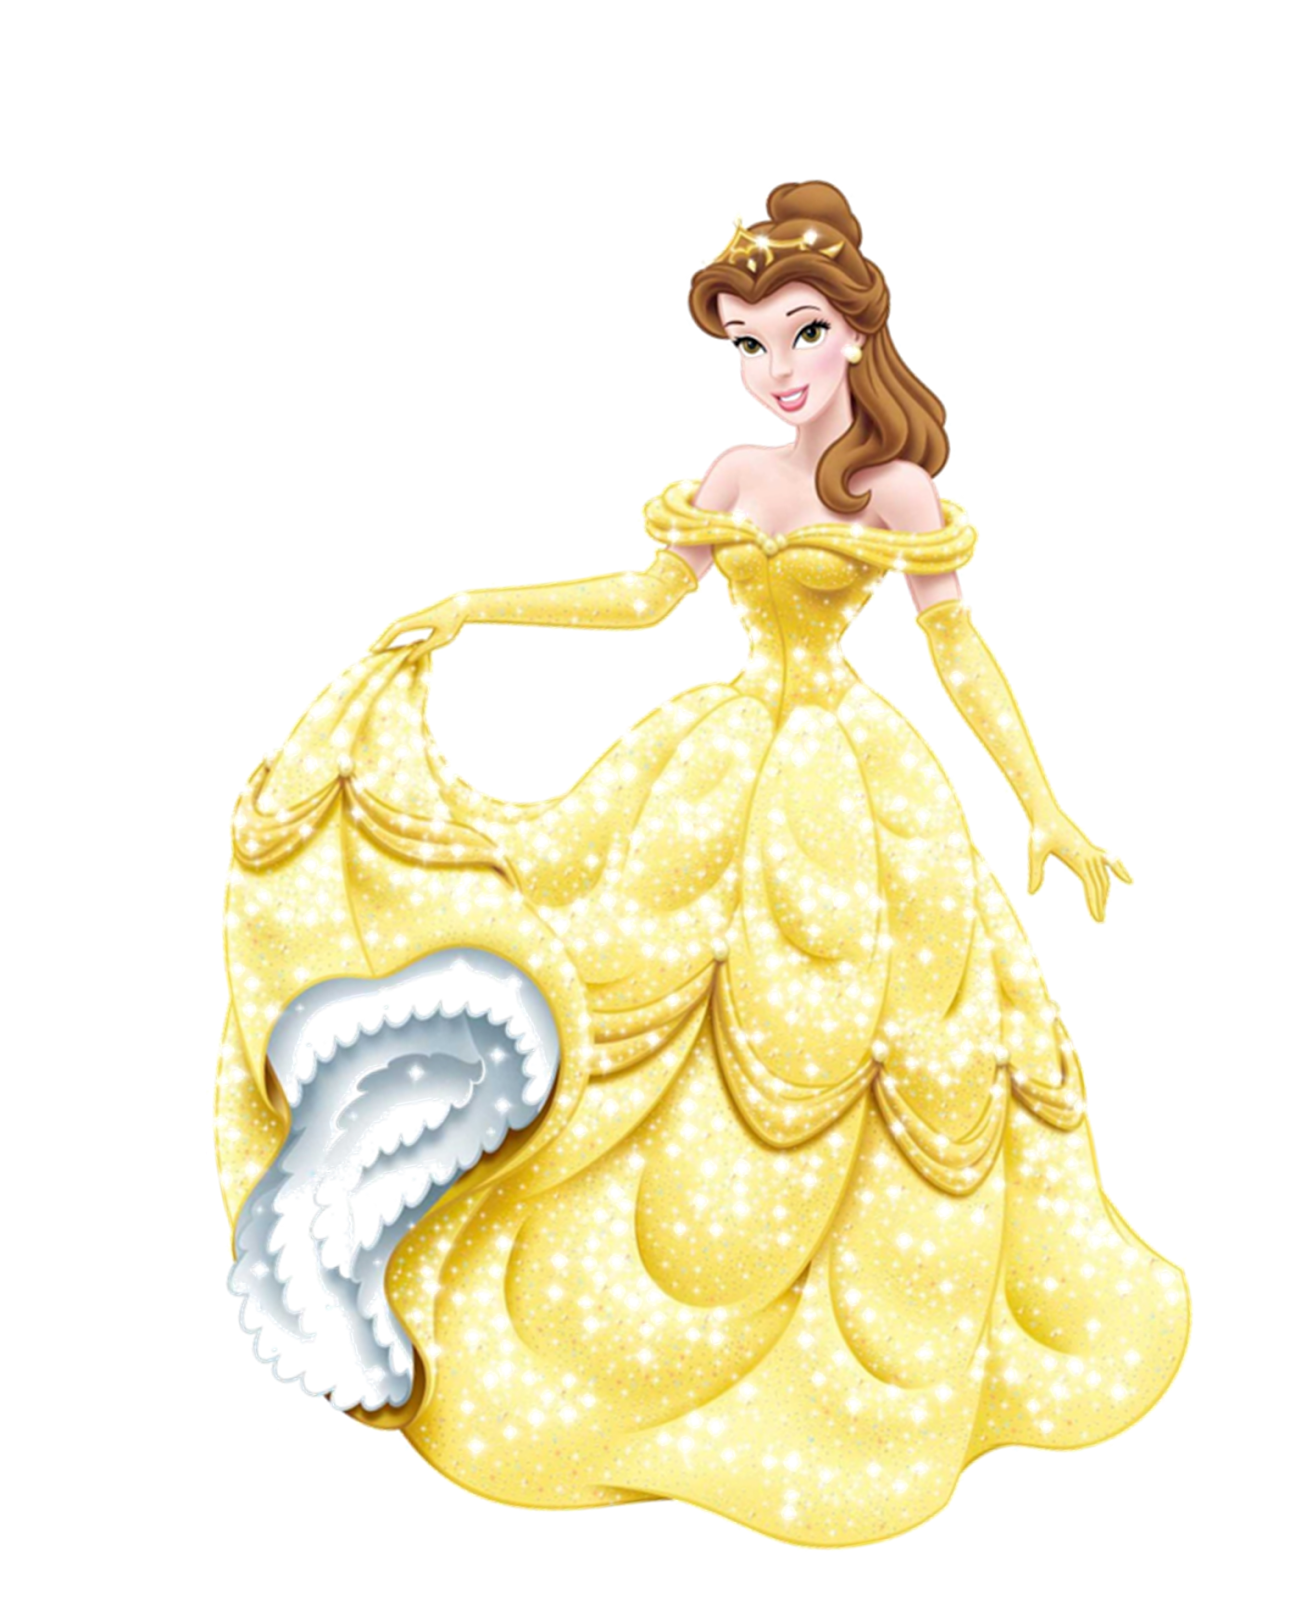 Artista hace ilustraciones tiernas de las princesas Disney